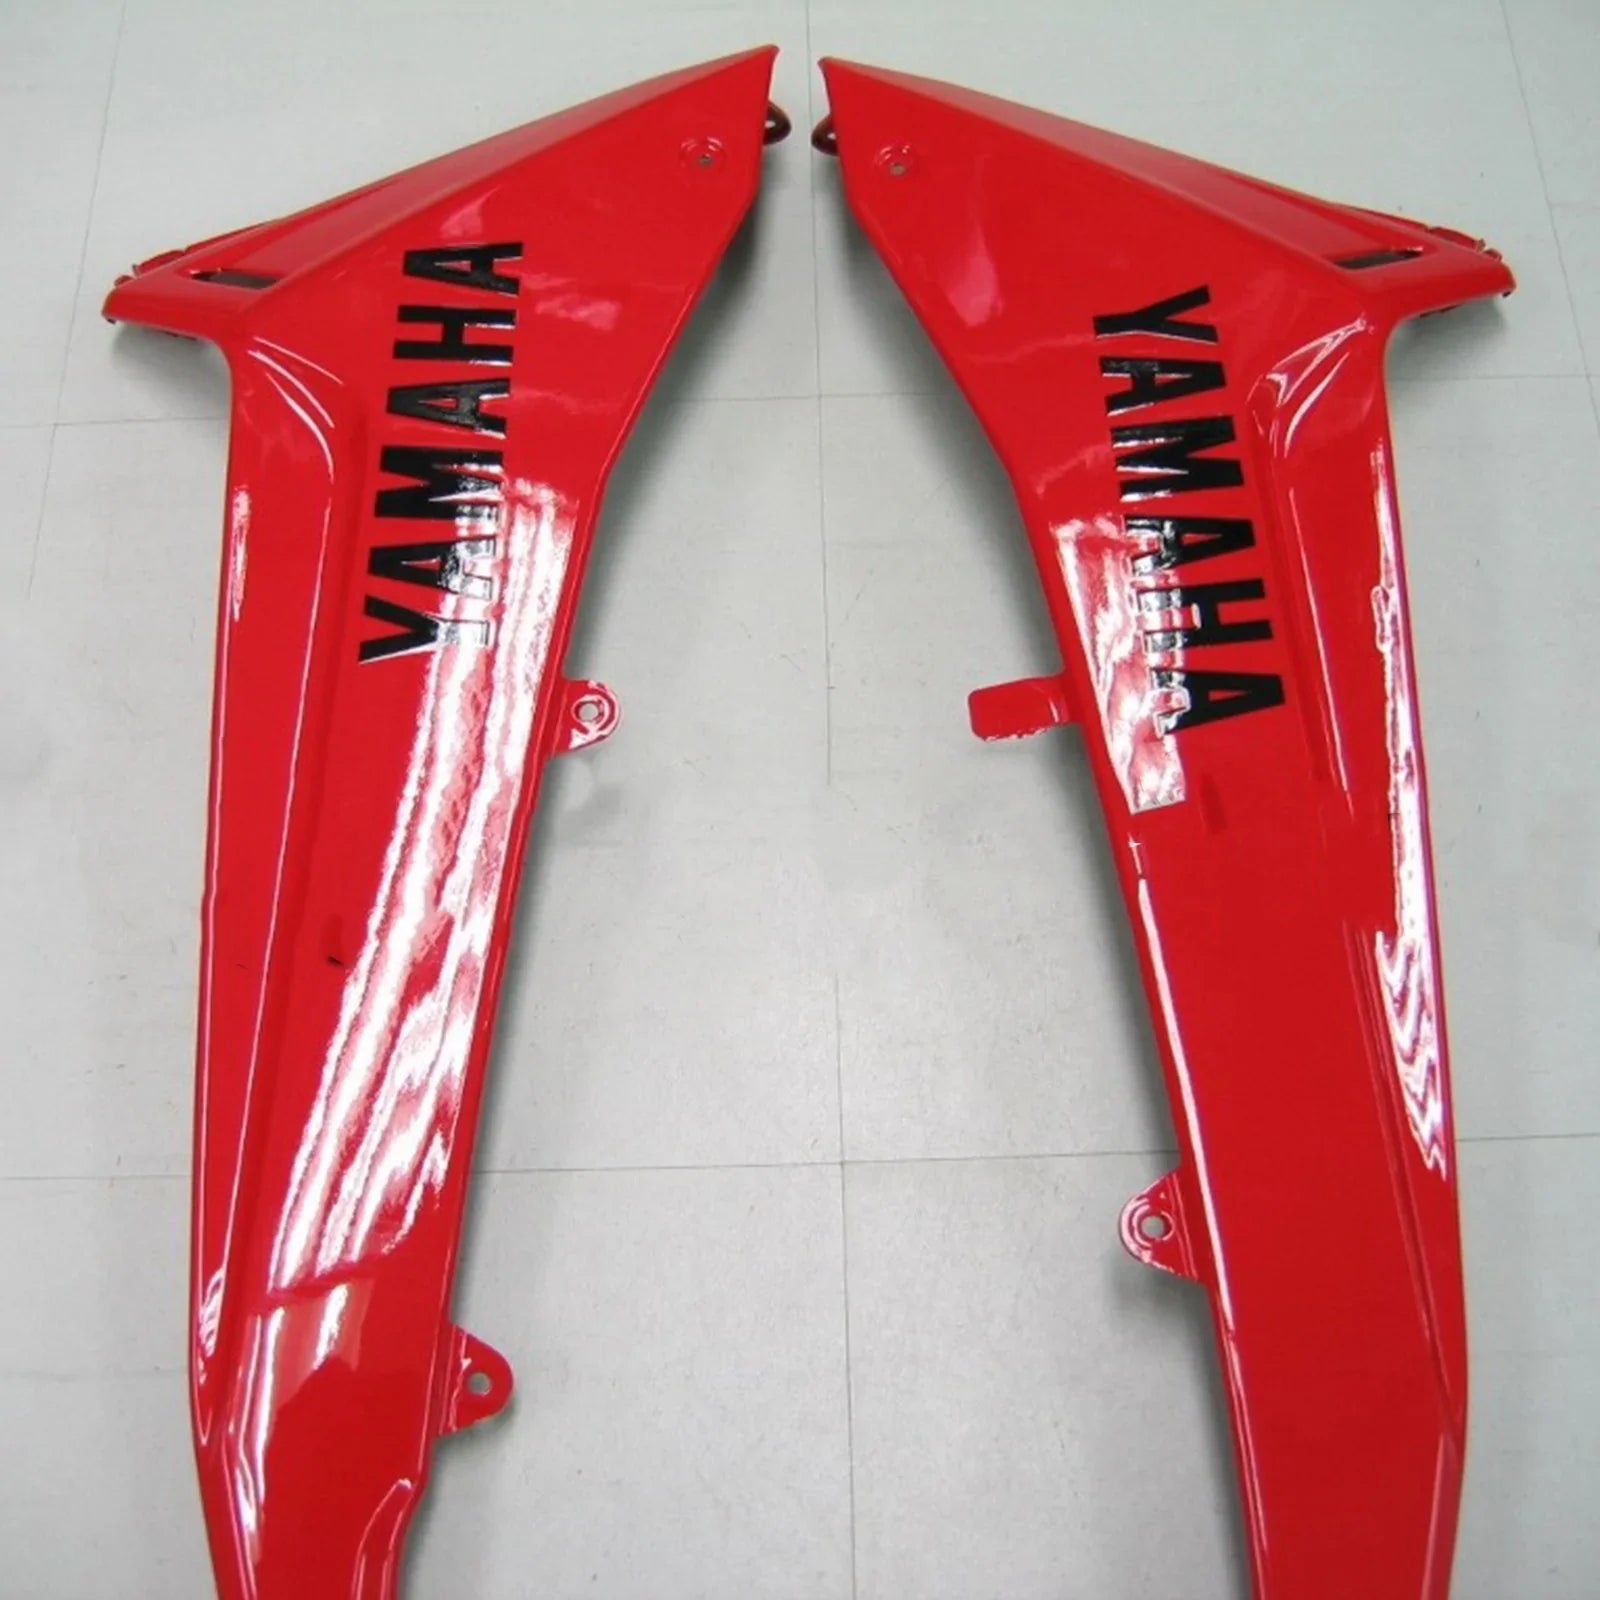 Kit de carénage Amotopart pour Yamaha T-Max 2013-2014 générique